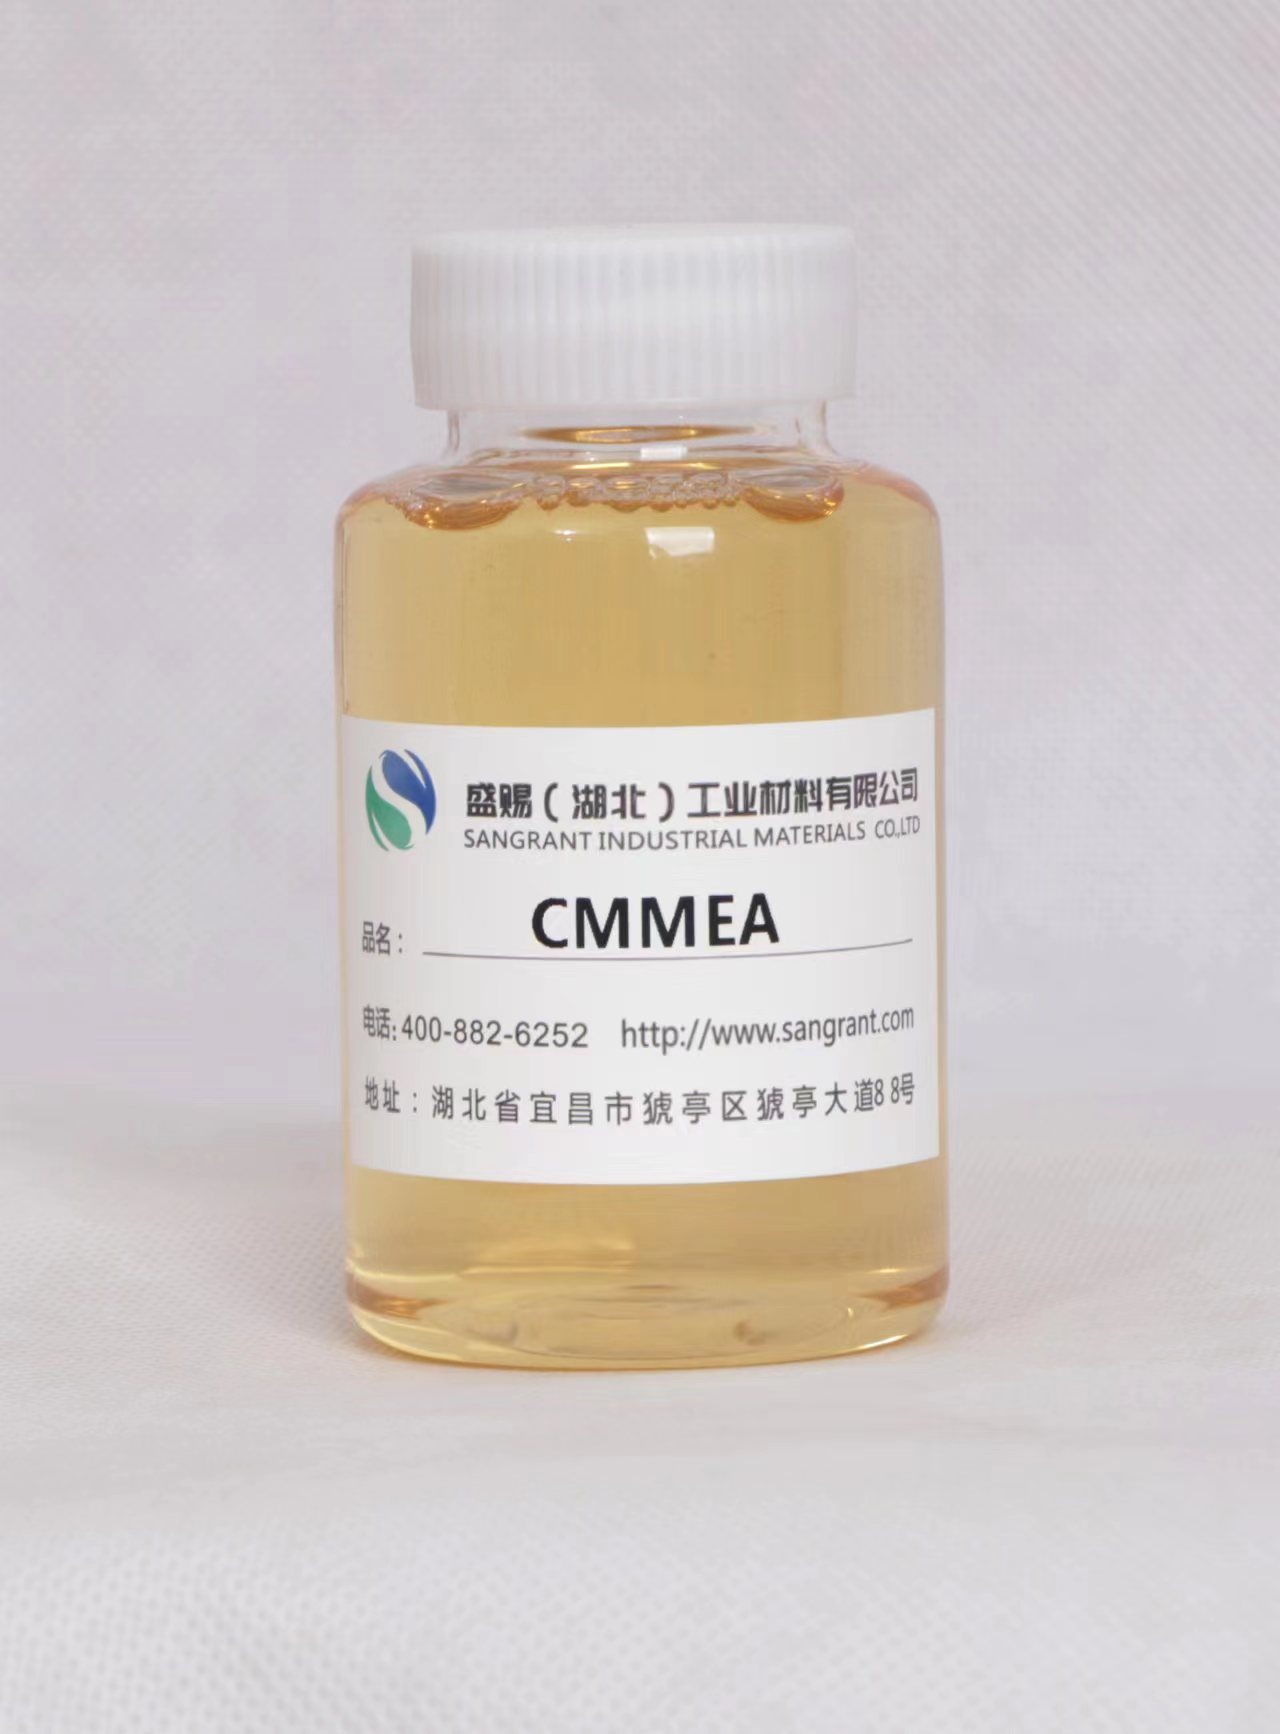 盛赐 椰油酸甲基单乙醇酰胺 CMMEA 日化增稠、纺织助剂乳化剂 重油污清洗剂 质量稳定